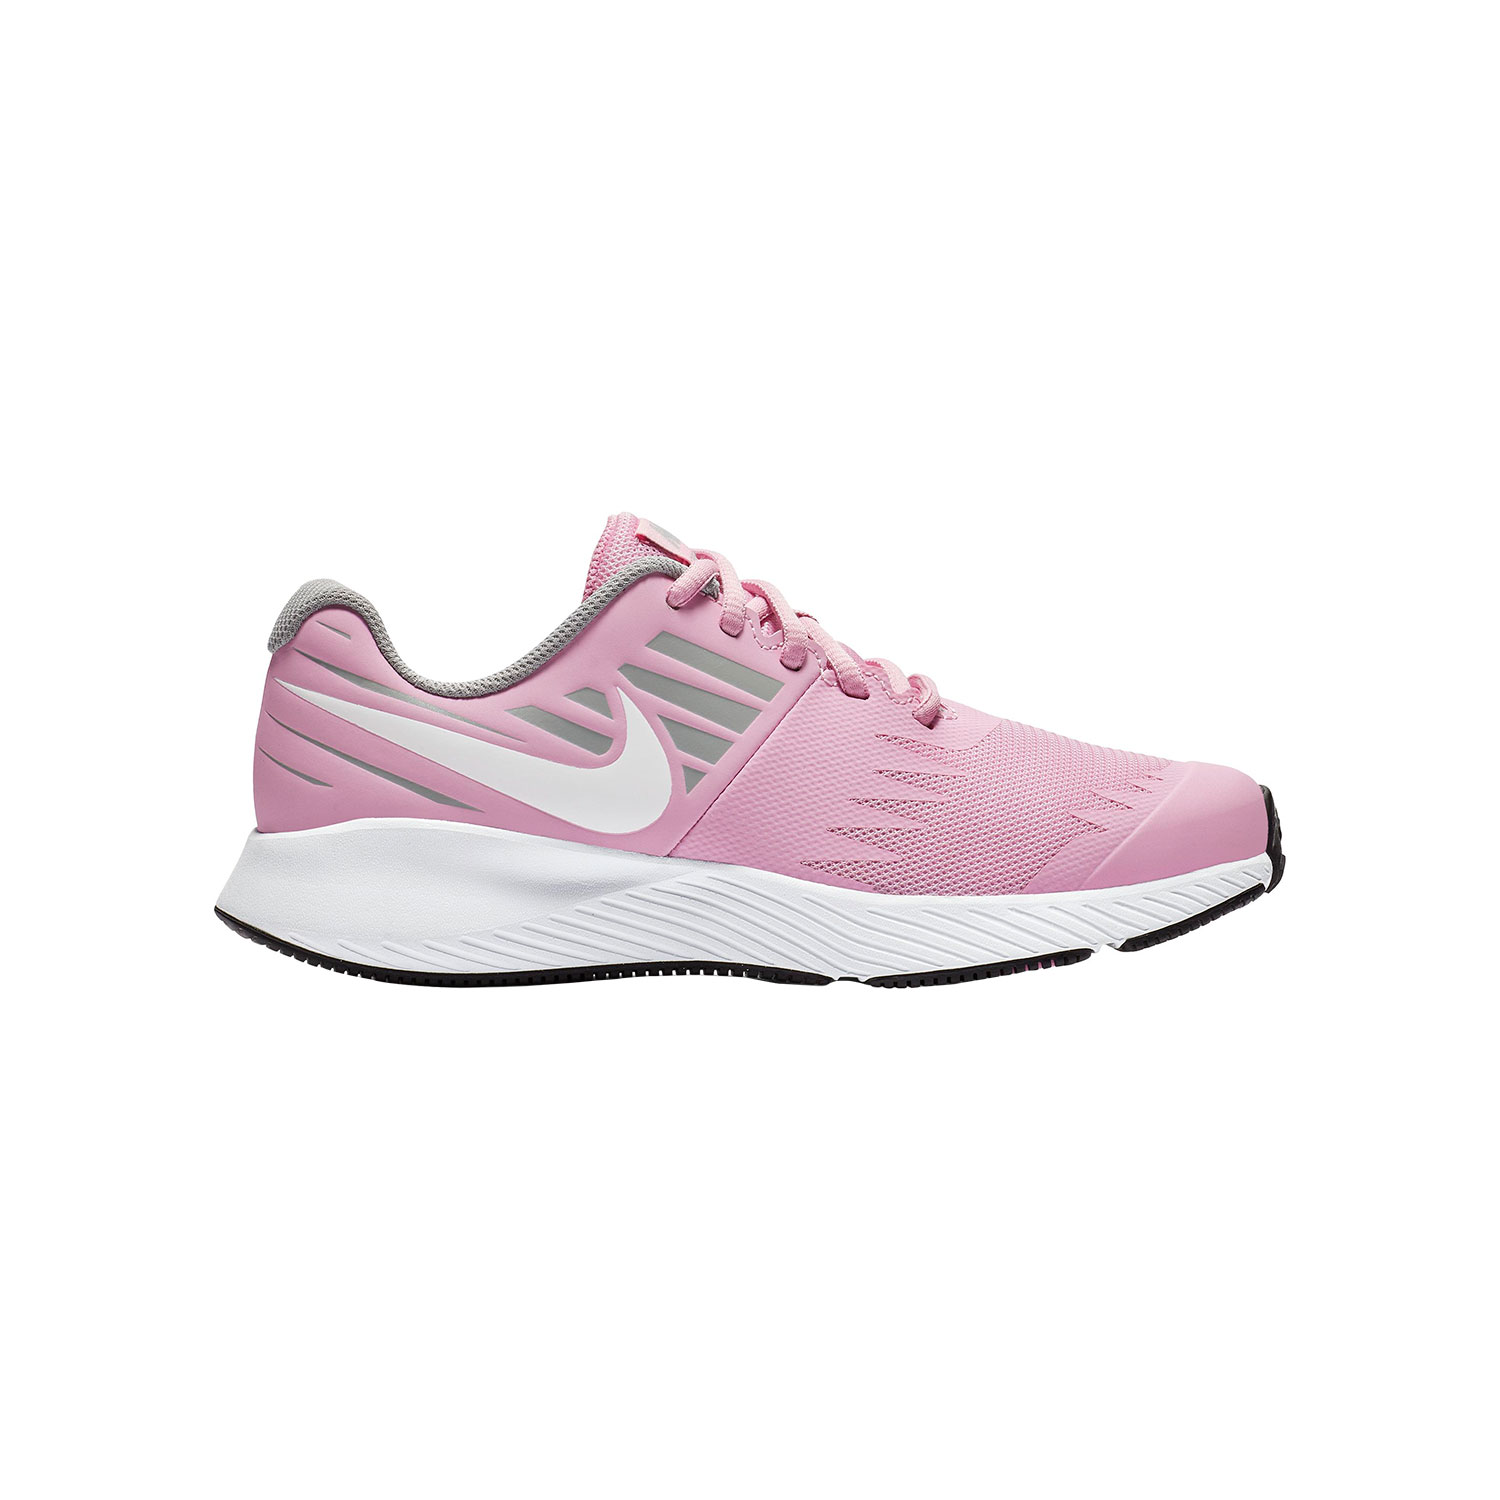 Nike Star Runner Scarpe da Running Bambina - Pink/Grey